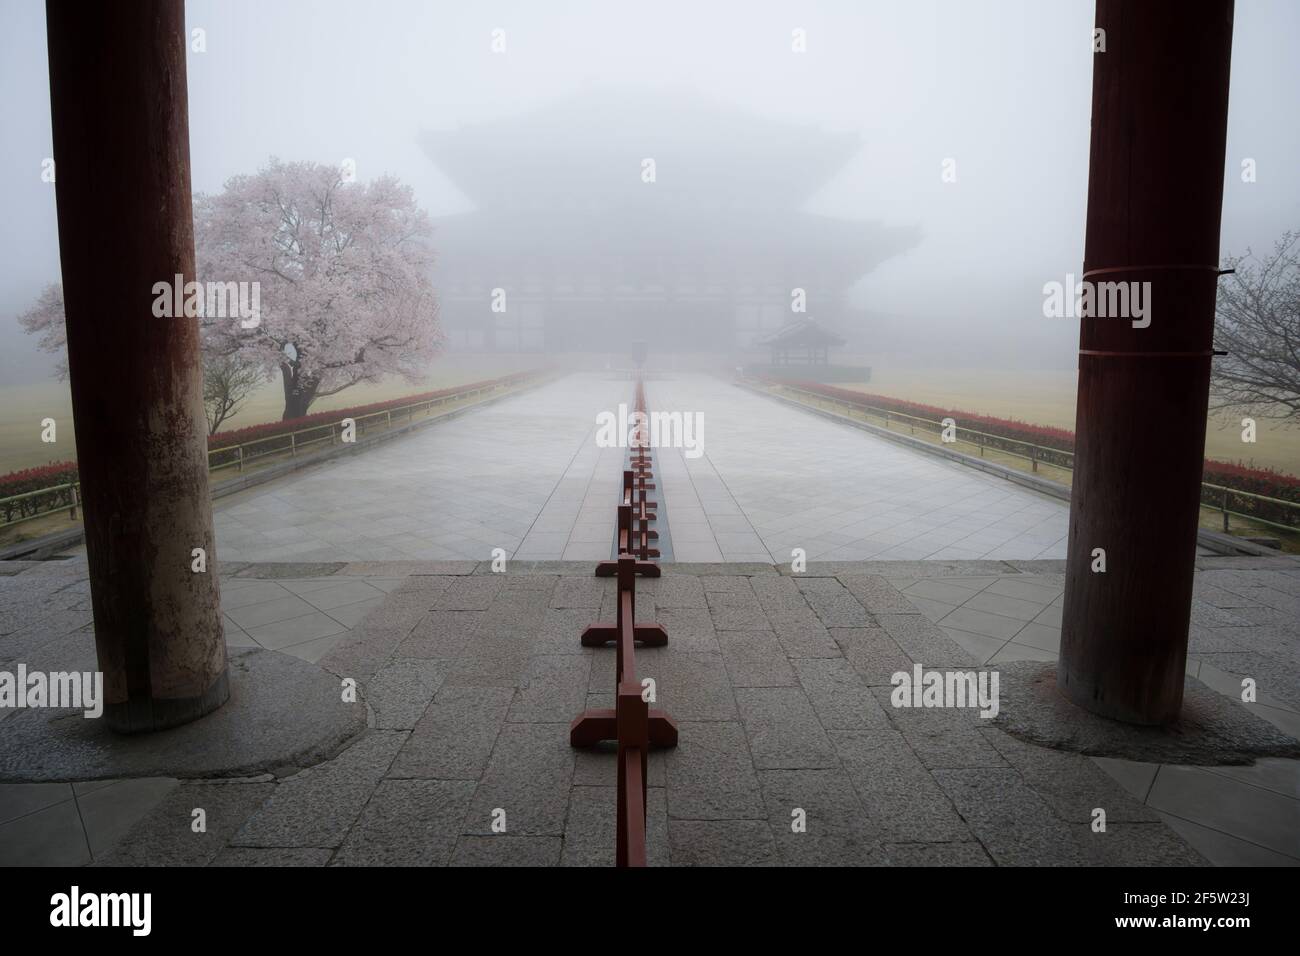 Verlassene Todaiji Tempel in Nara, Japan an einem nebligen Morgen im März. Coronavirus-Ängste haben zu reduzierten Besucherzahlen an vielen berühmten touristischen Orten geführt Stockfoto